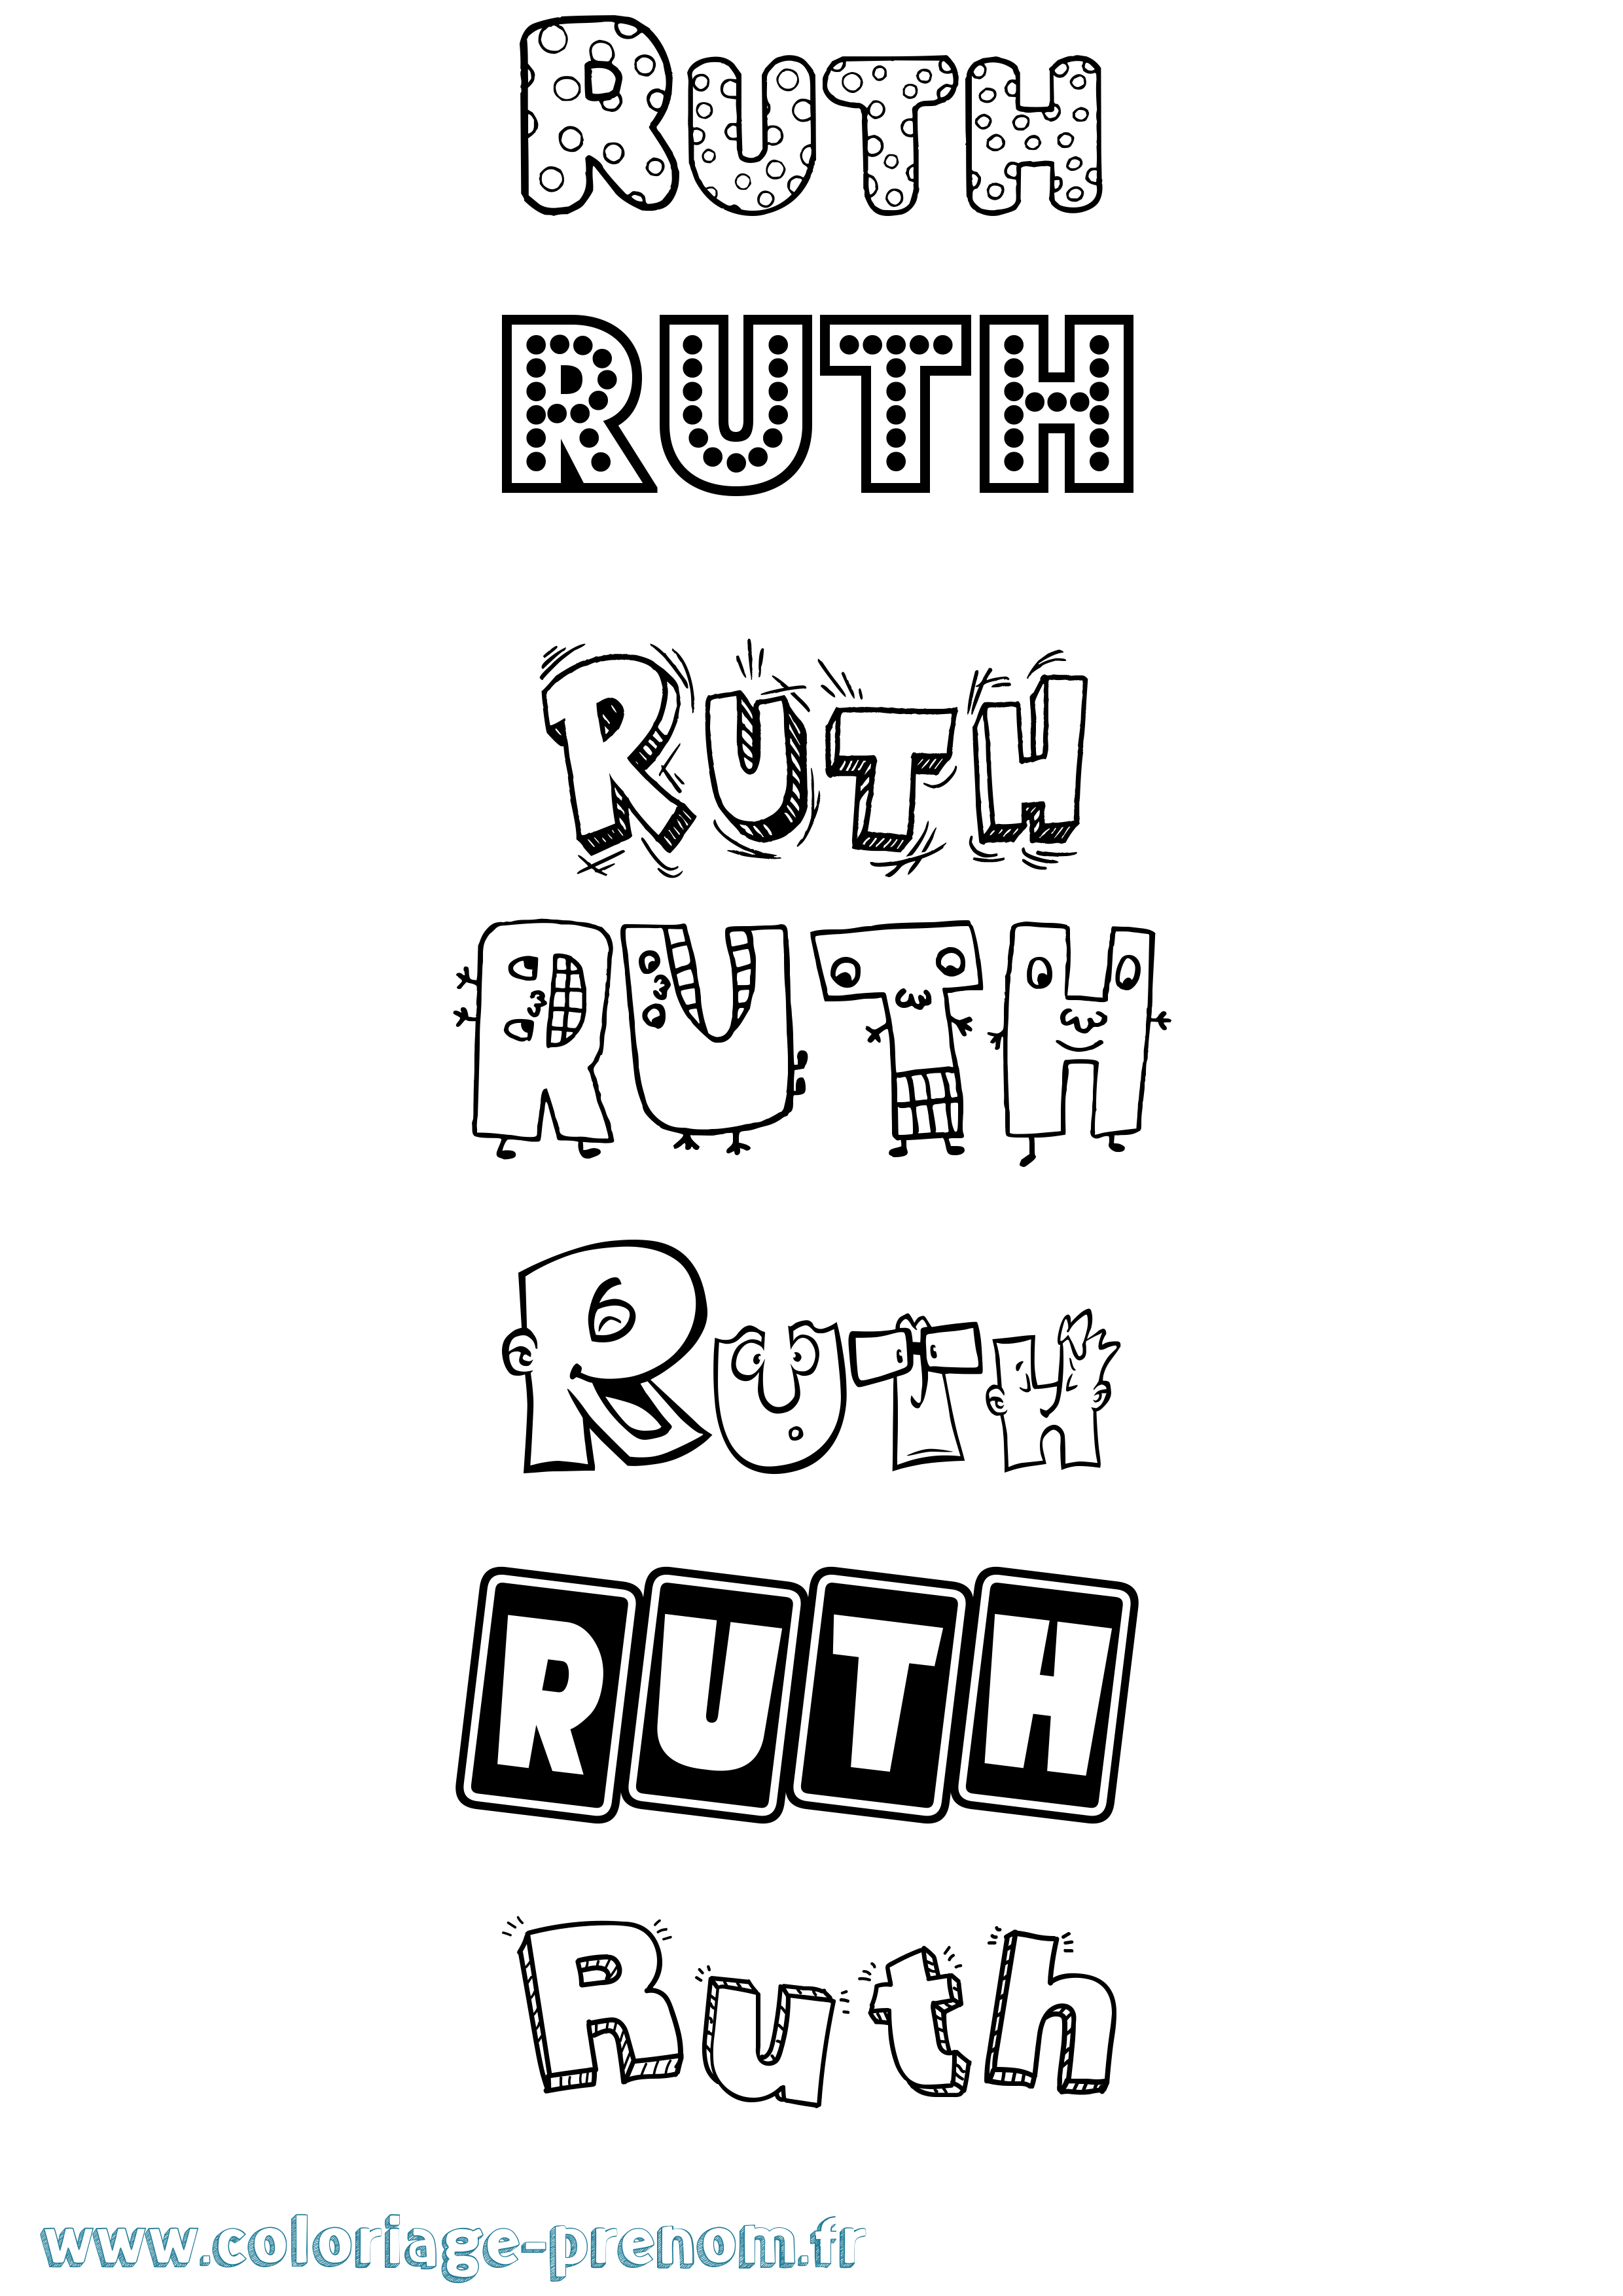 Coloriage prénom Ruth